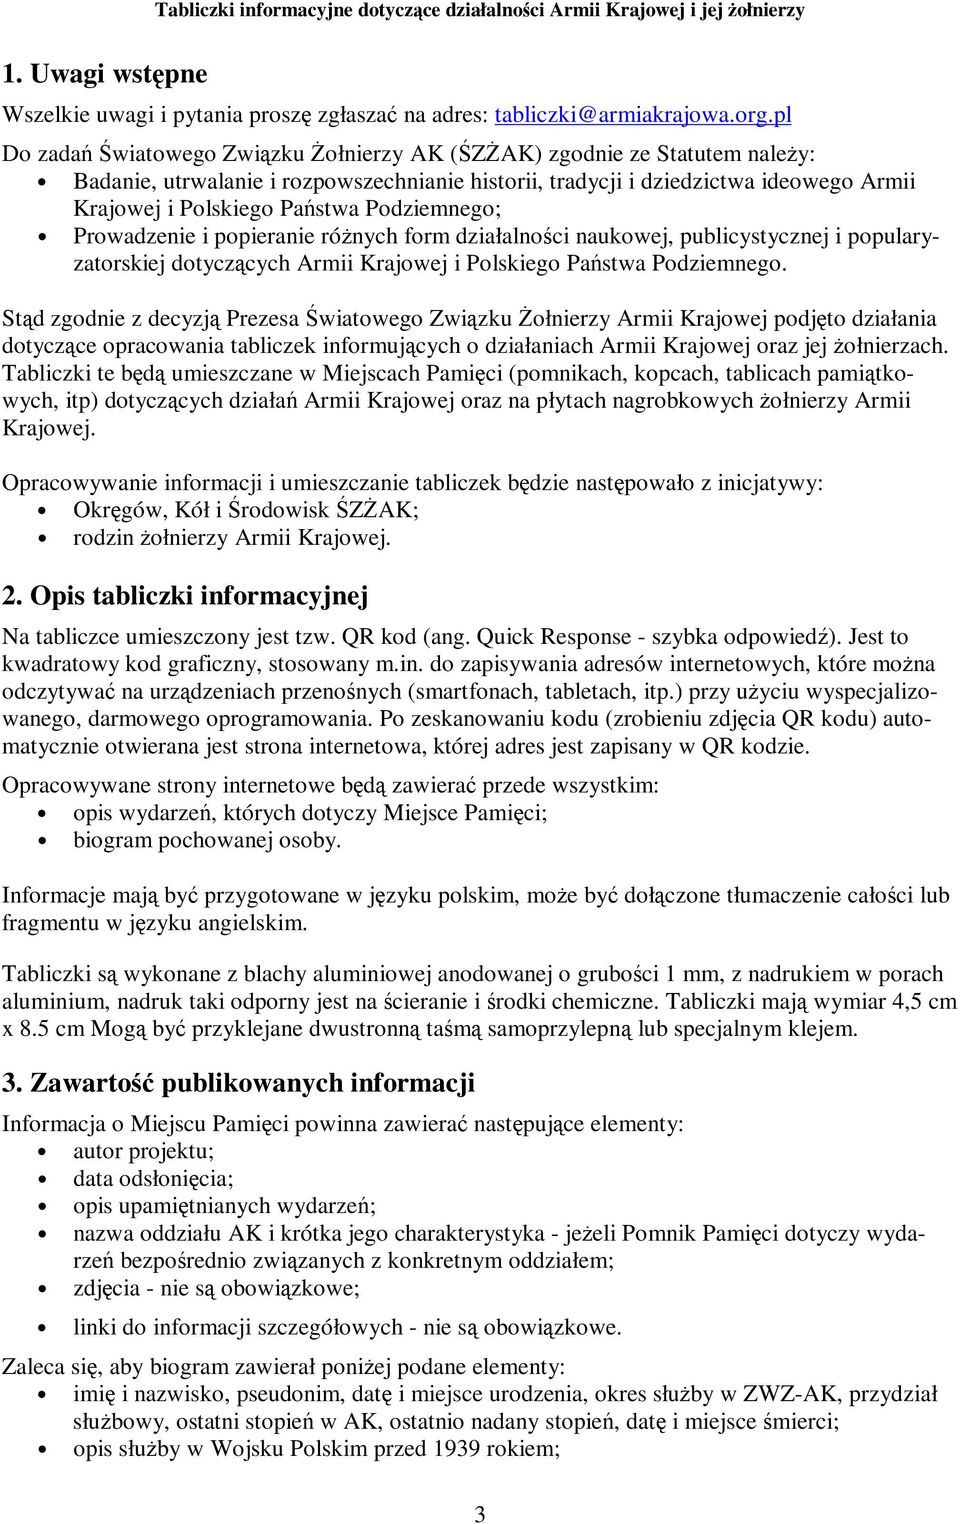 Podziemnego; Prowadzenie i popieranie róŝnych form działalności naukowej, publicystycznej i popularyzatorskiej dotyczących Armii Krajowej i Polskiego Państwa Podziemnego.